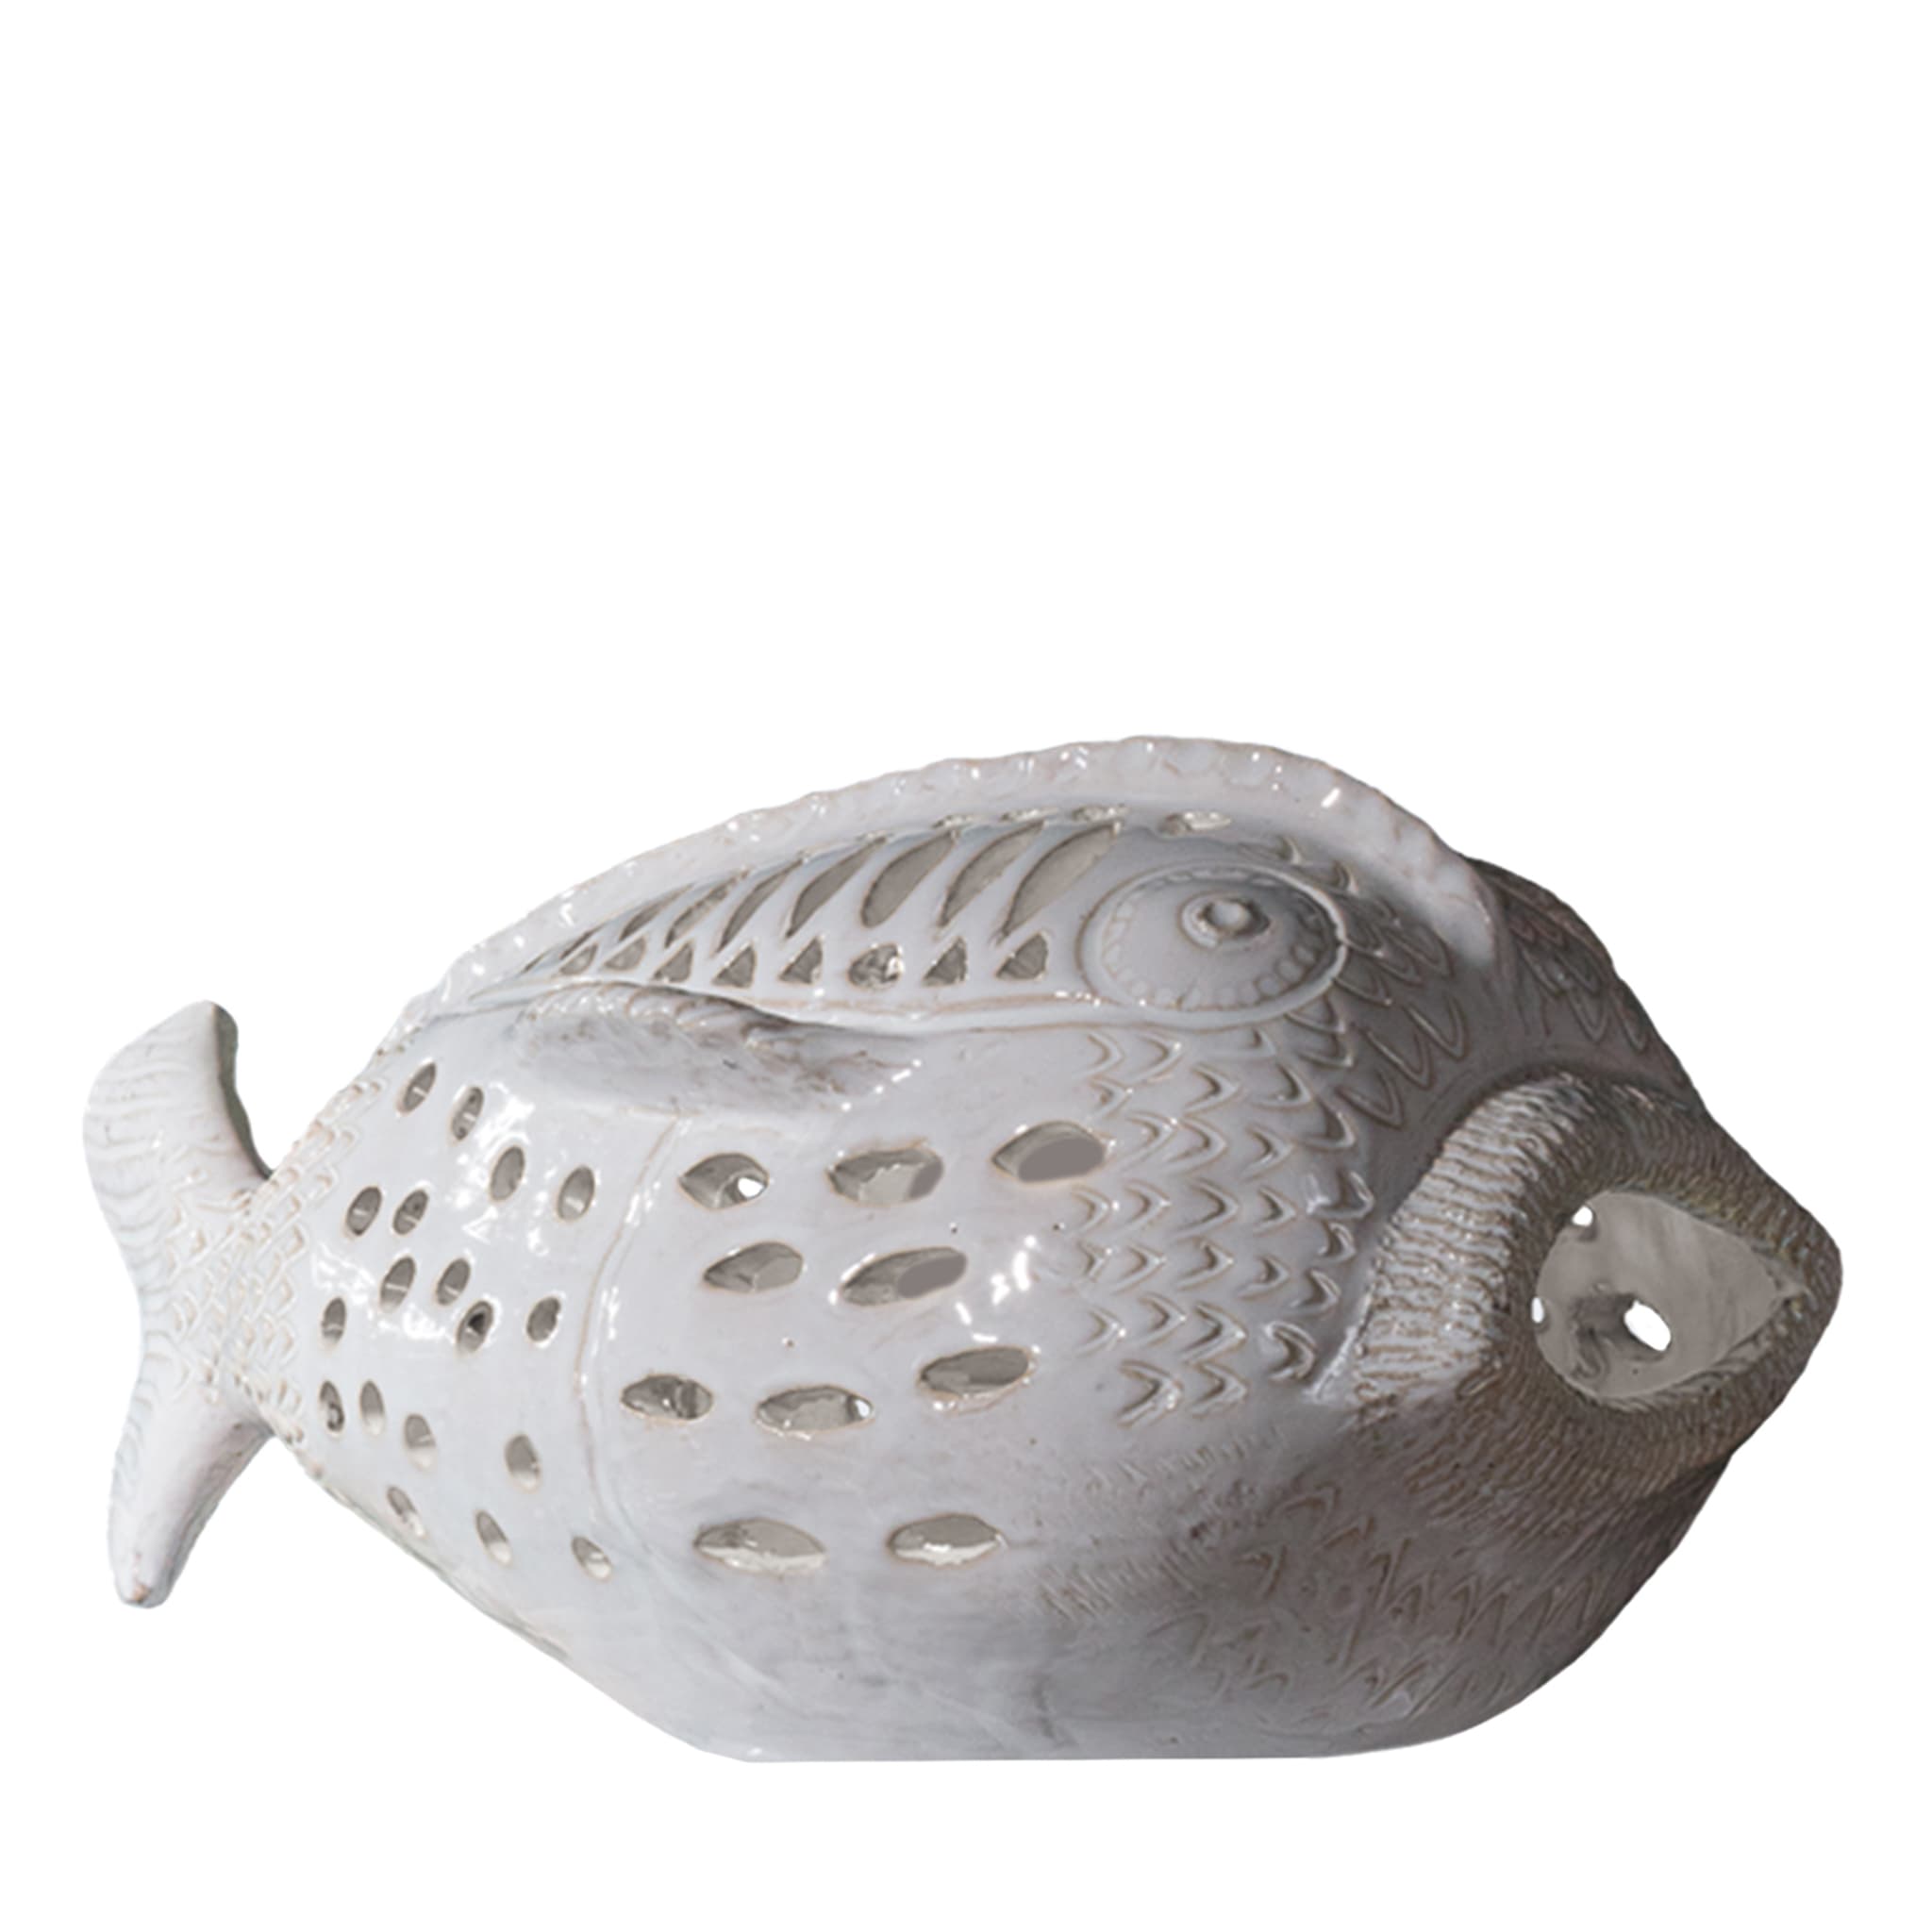 Perle Marine Pesce Pagliaccio N. 6 Escultura blanca  - Vista principal